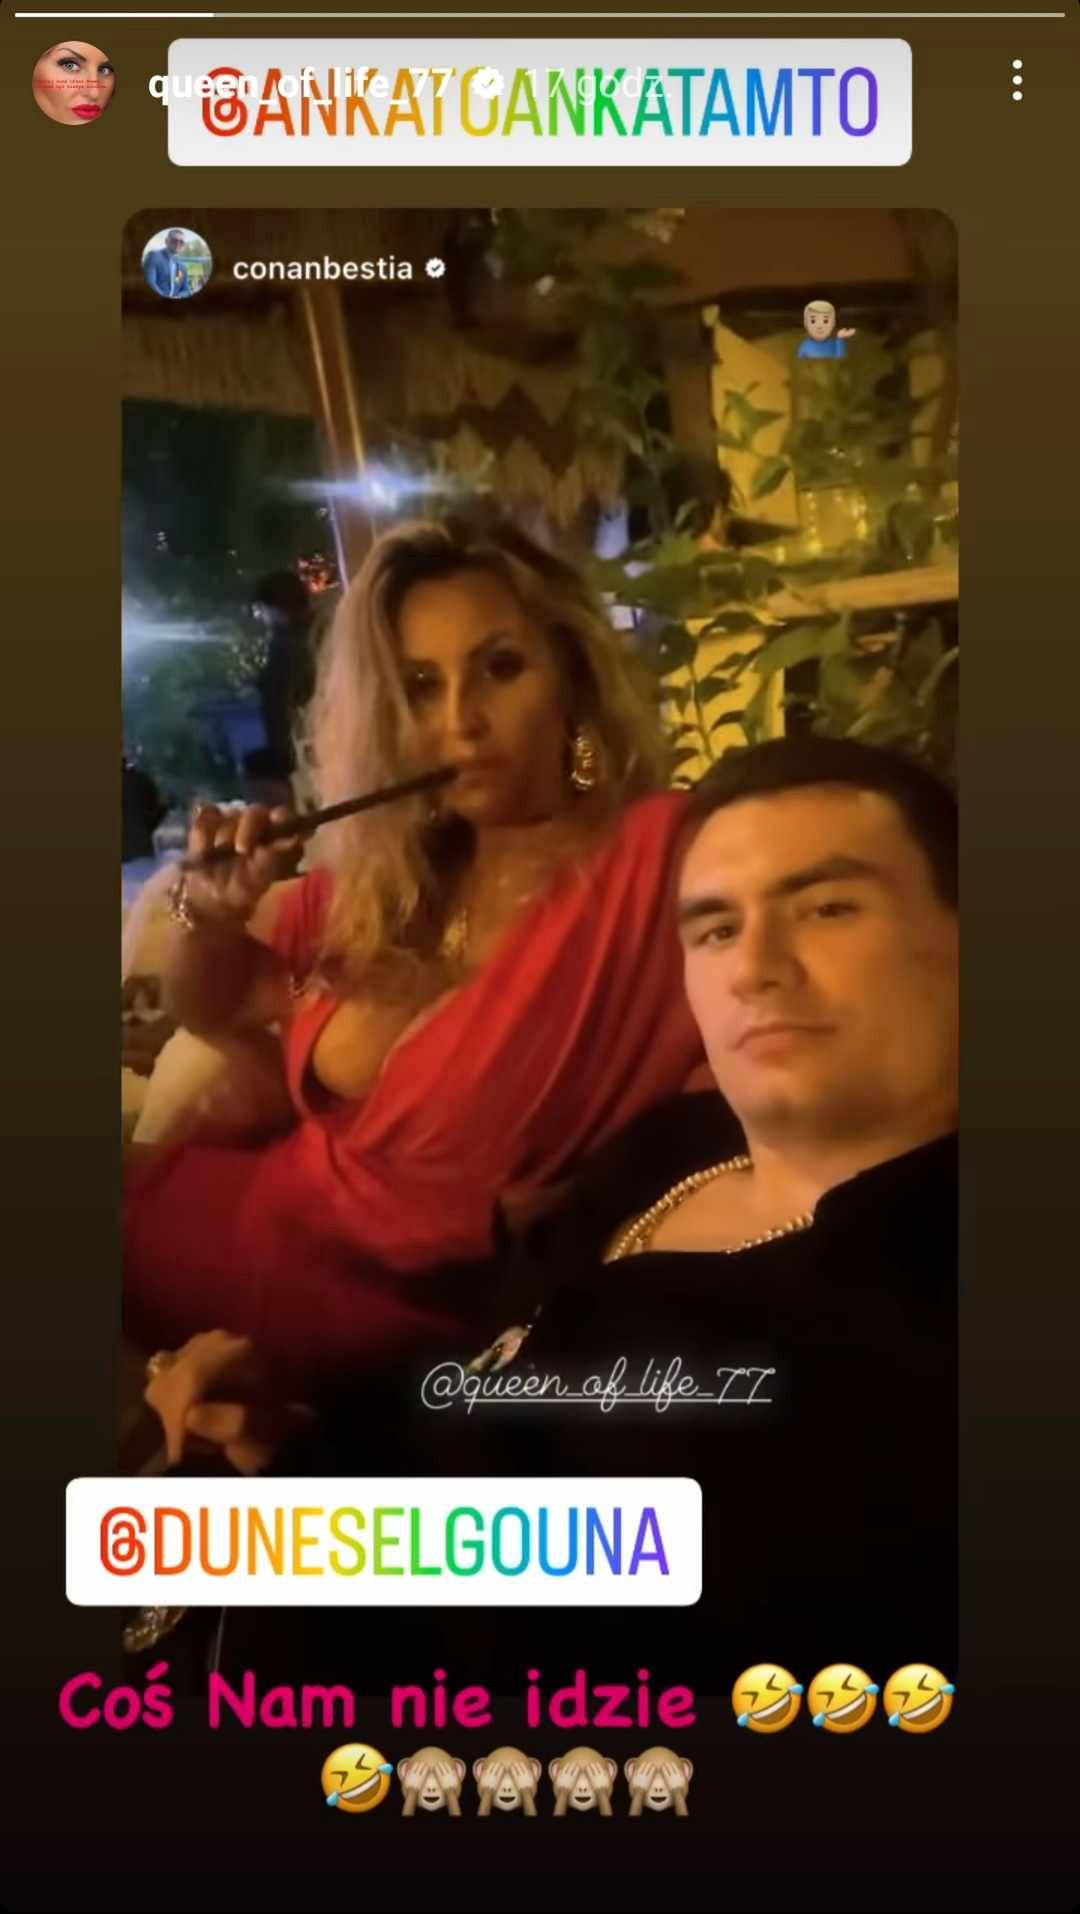 Dagmara Kaźmierska i Conan relaksują się przy fajce wodnej